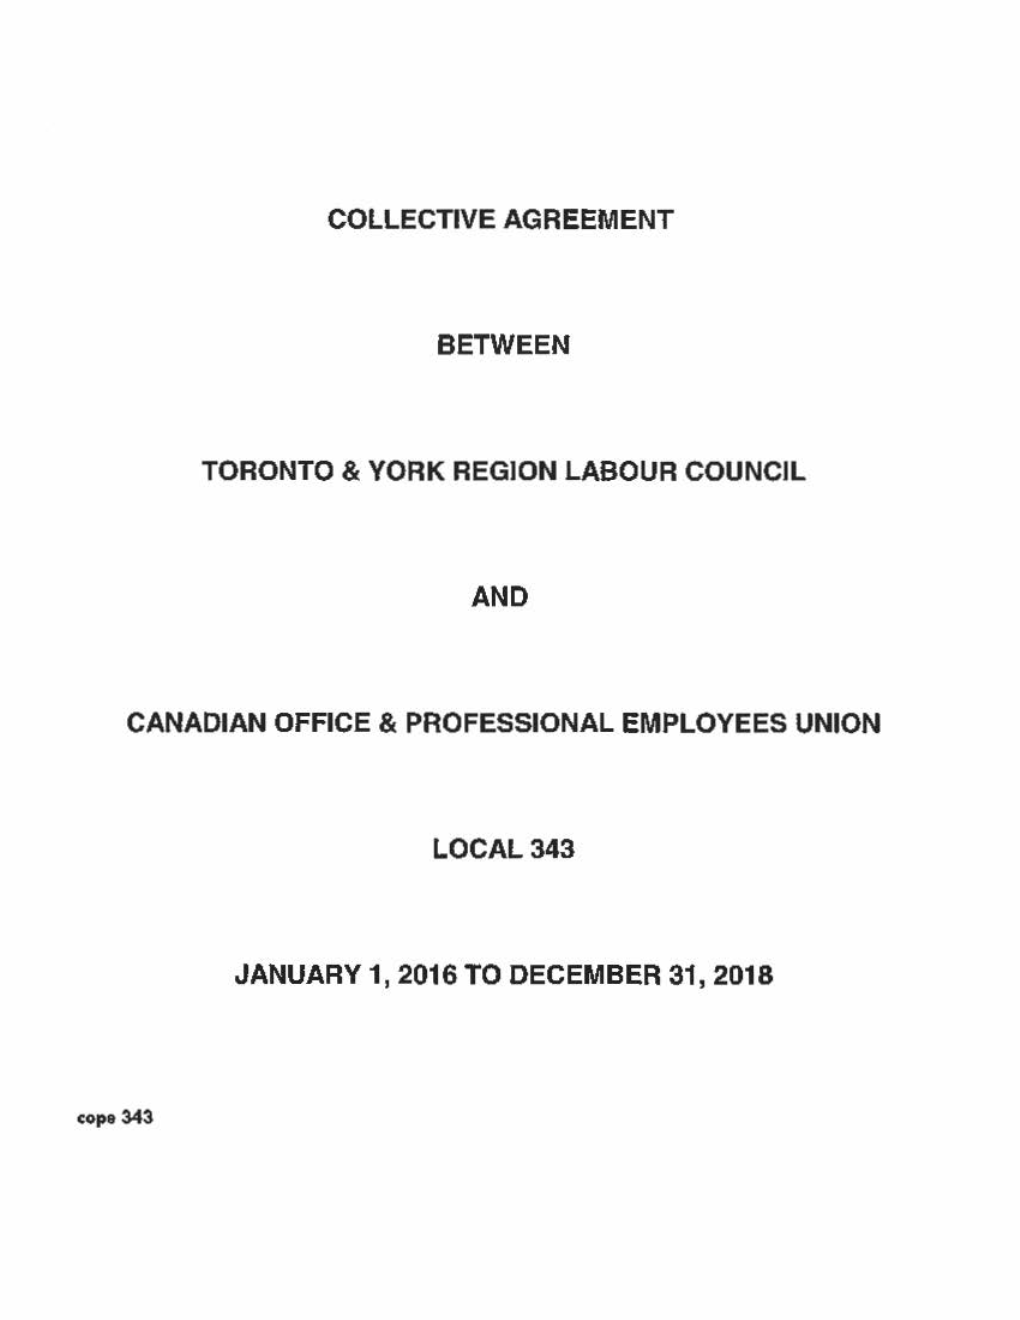 Collective Agreement Between Toronto & York